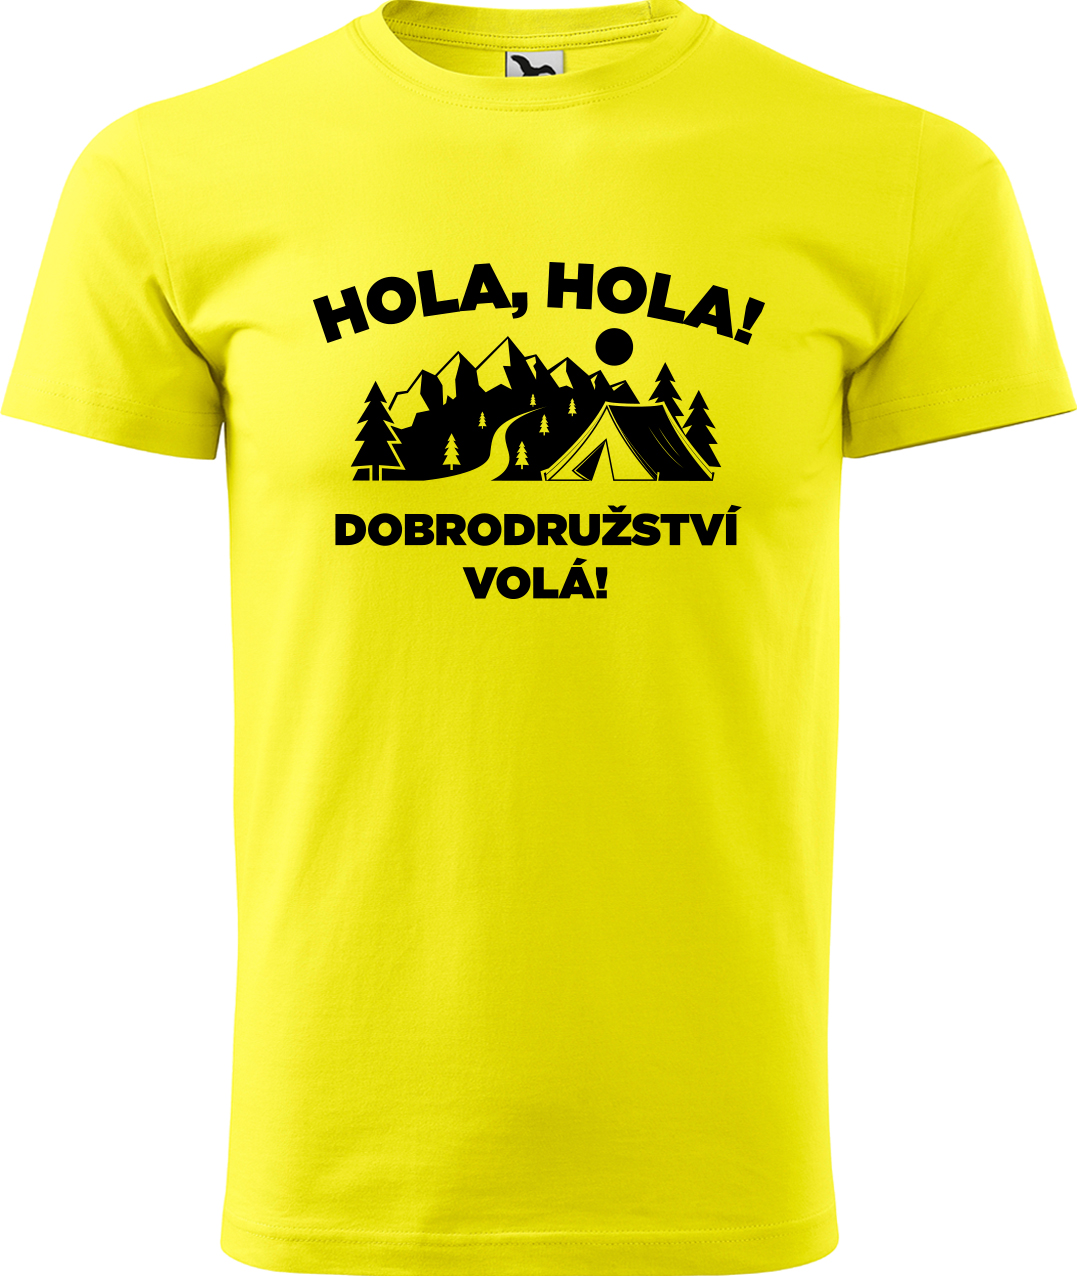 Pánské cestovatelské tričko - Hola hola! Dobrodružství volá! Velikost: S, Barva: Žlutá (04), Střih: pánský